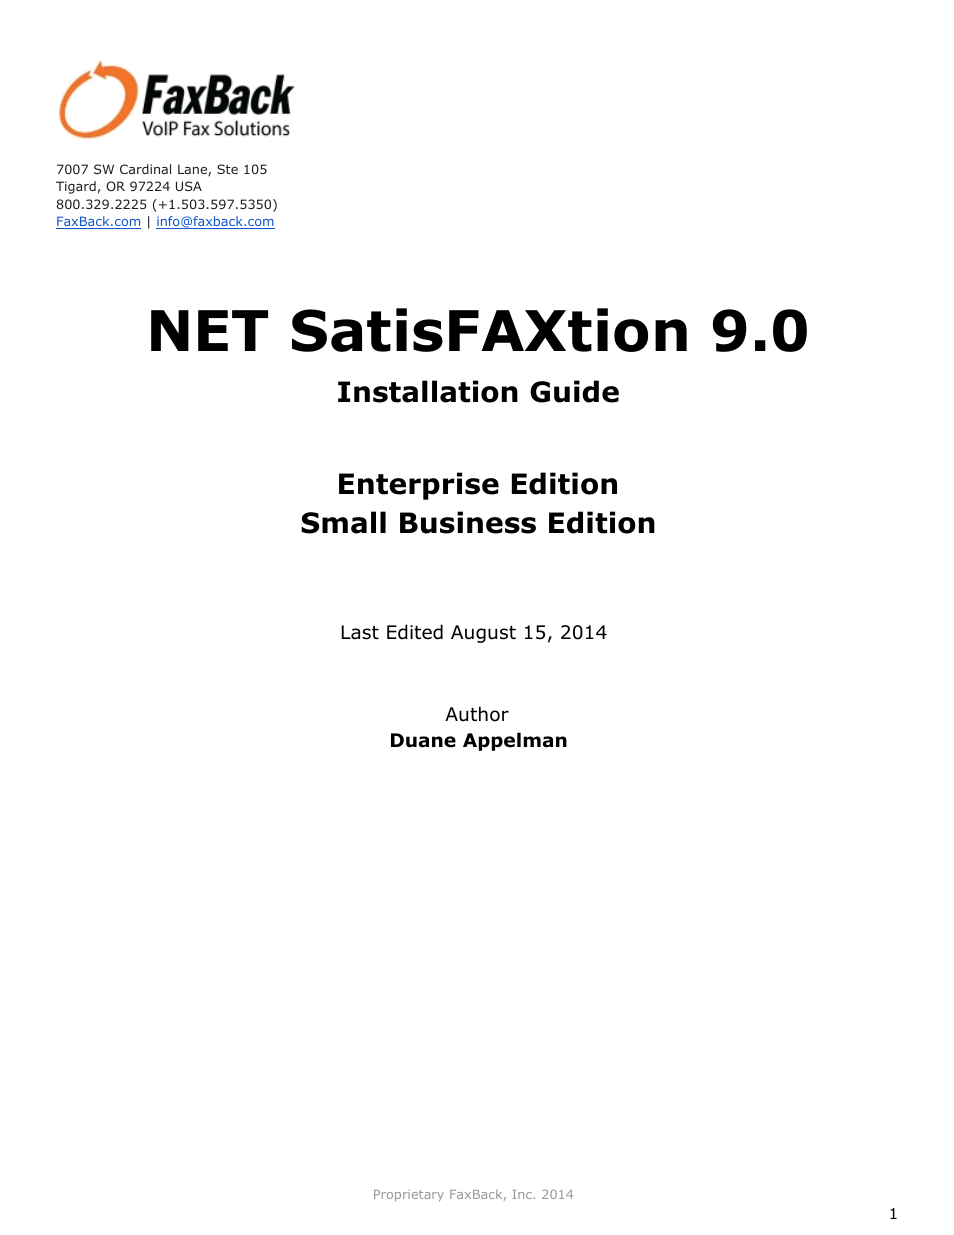 NET SatisFAXtion 9.0 - Installation Guide (Enterprise Edition)